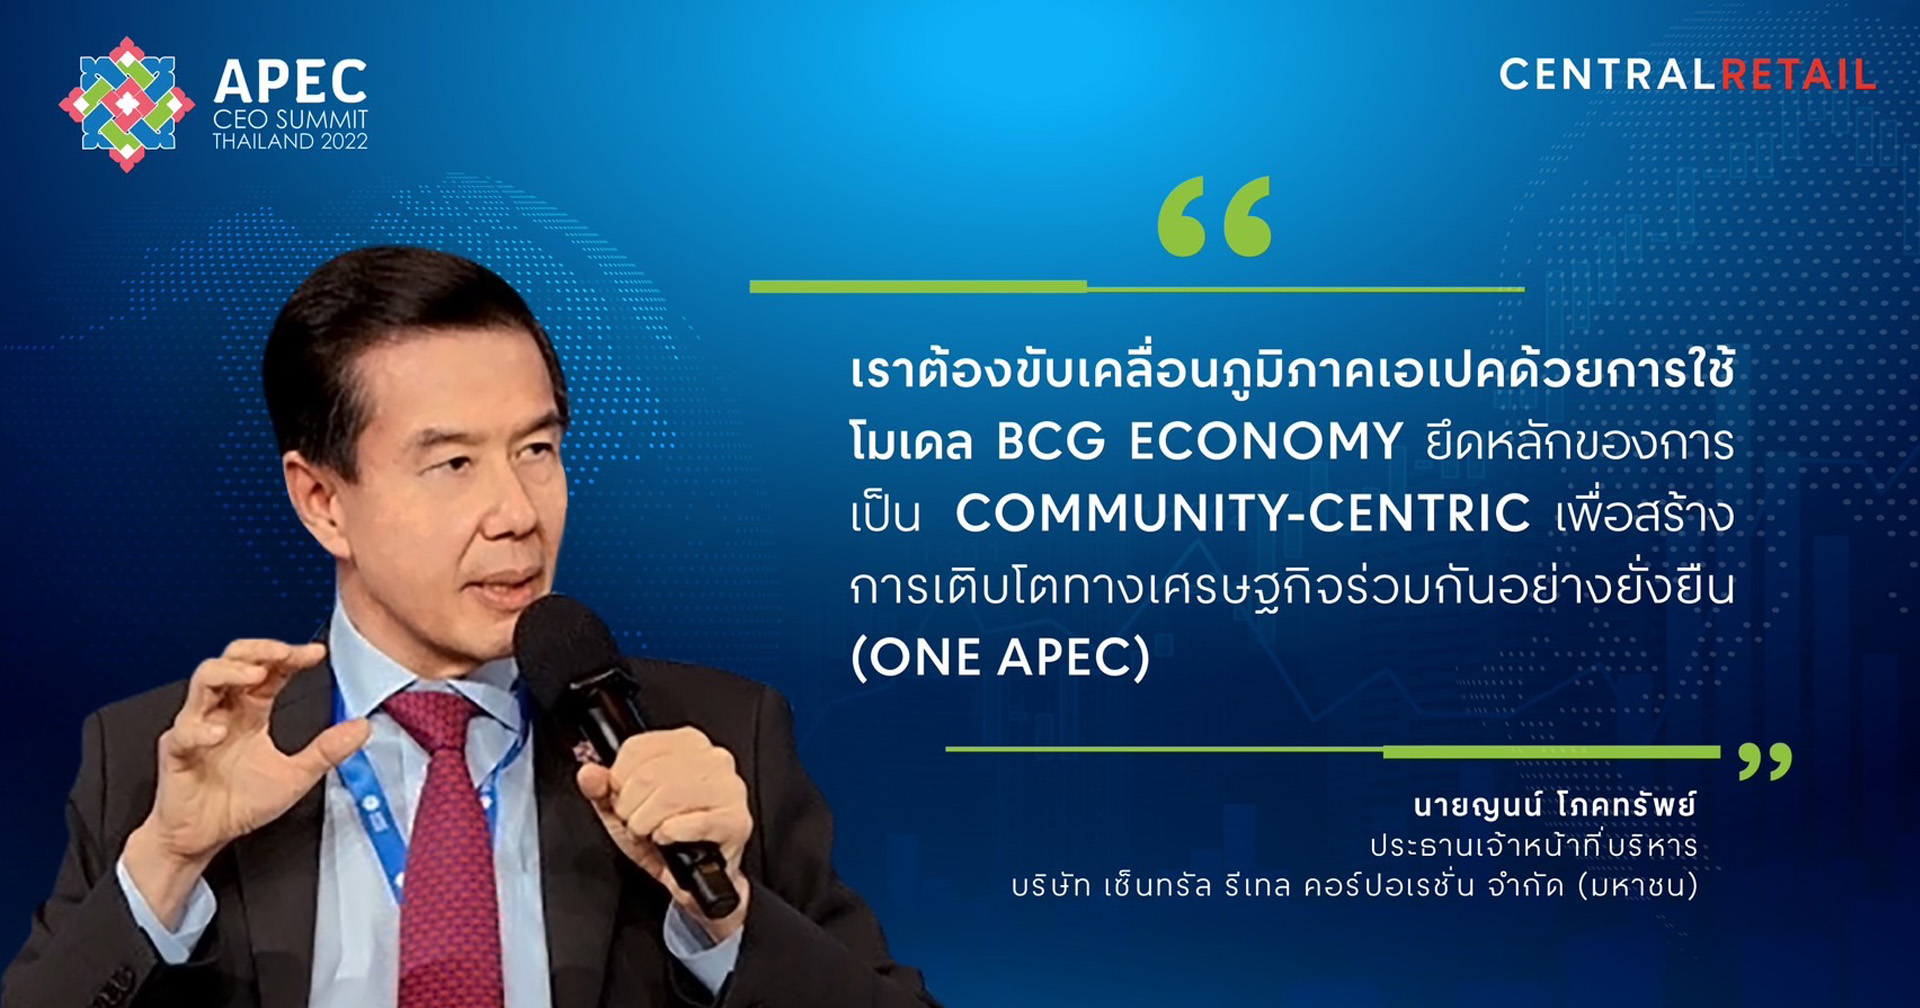 ‘เซ็นทรัล รีเทล’ ร่วมแสดงวิสัยทัศน์ มุ่งสู่การเป็น ONE APEC บนเวที APEC CEO SUMMIT 2022